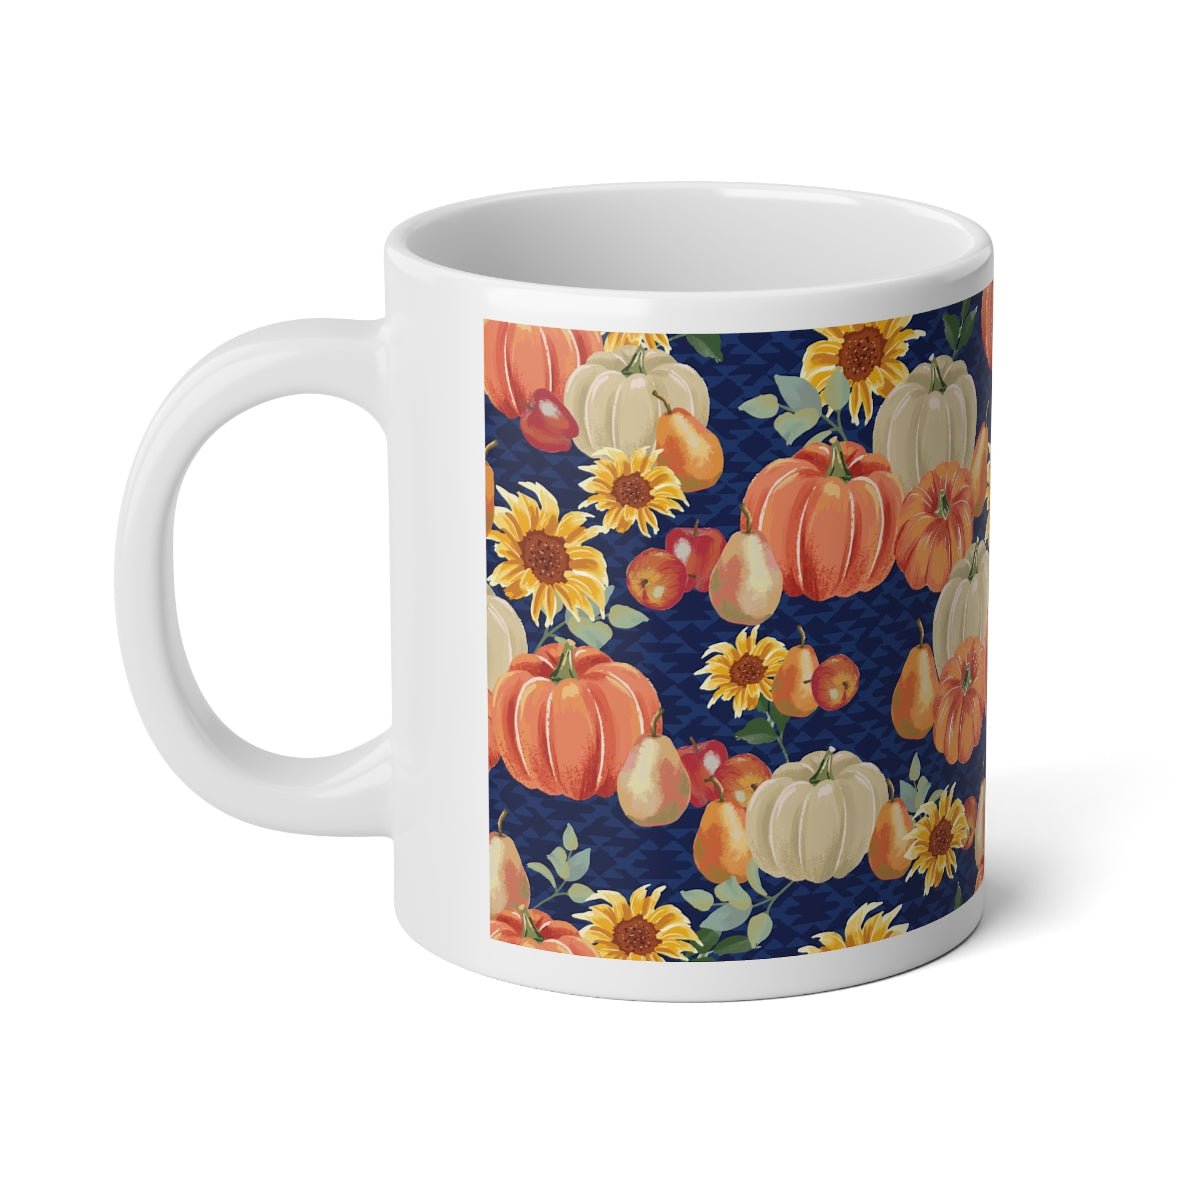 Fall Pumpkins and Sunflowers Jumbo Mug, 20oz - Puffin Lime